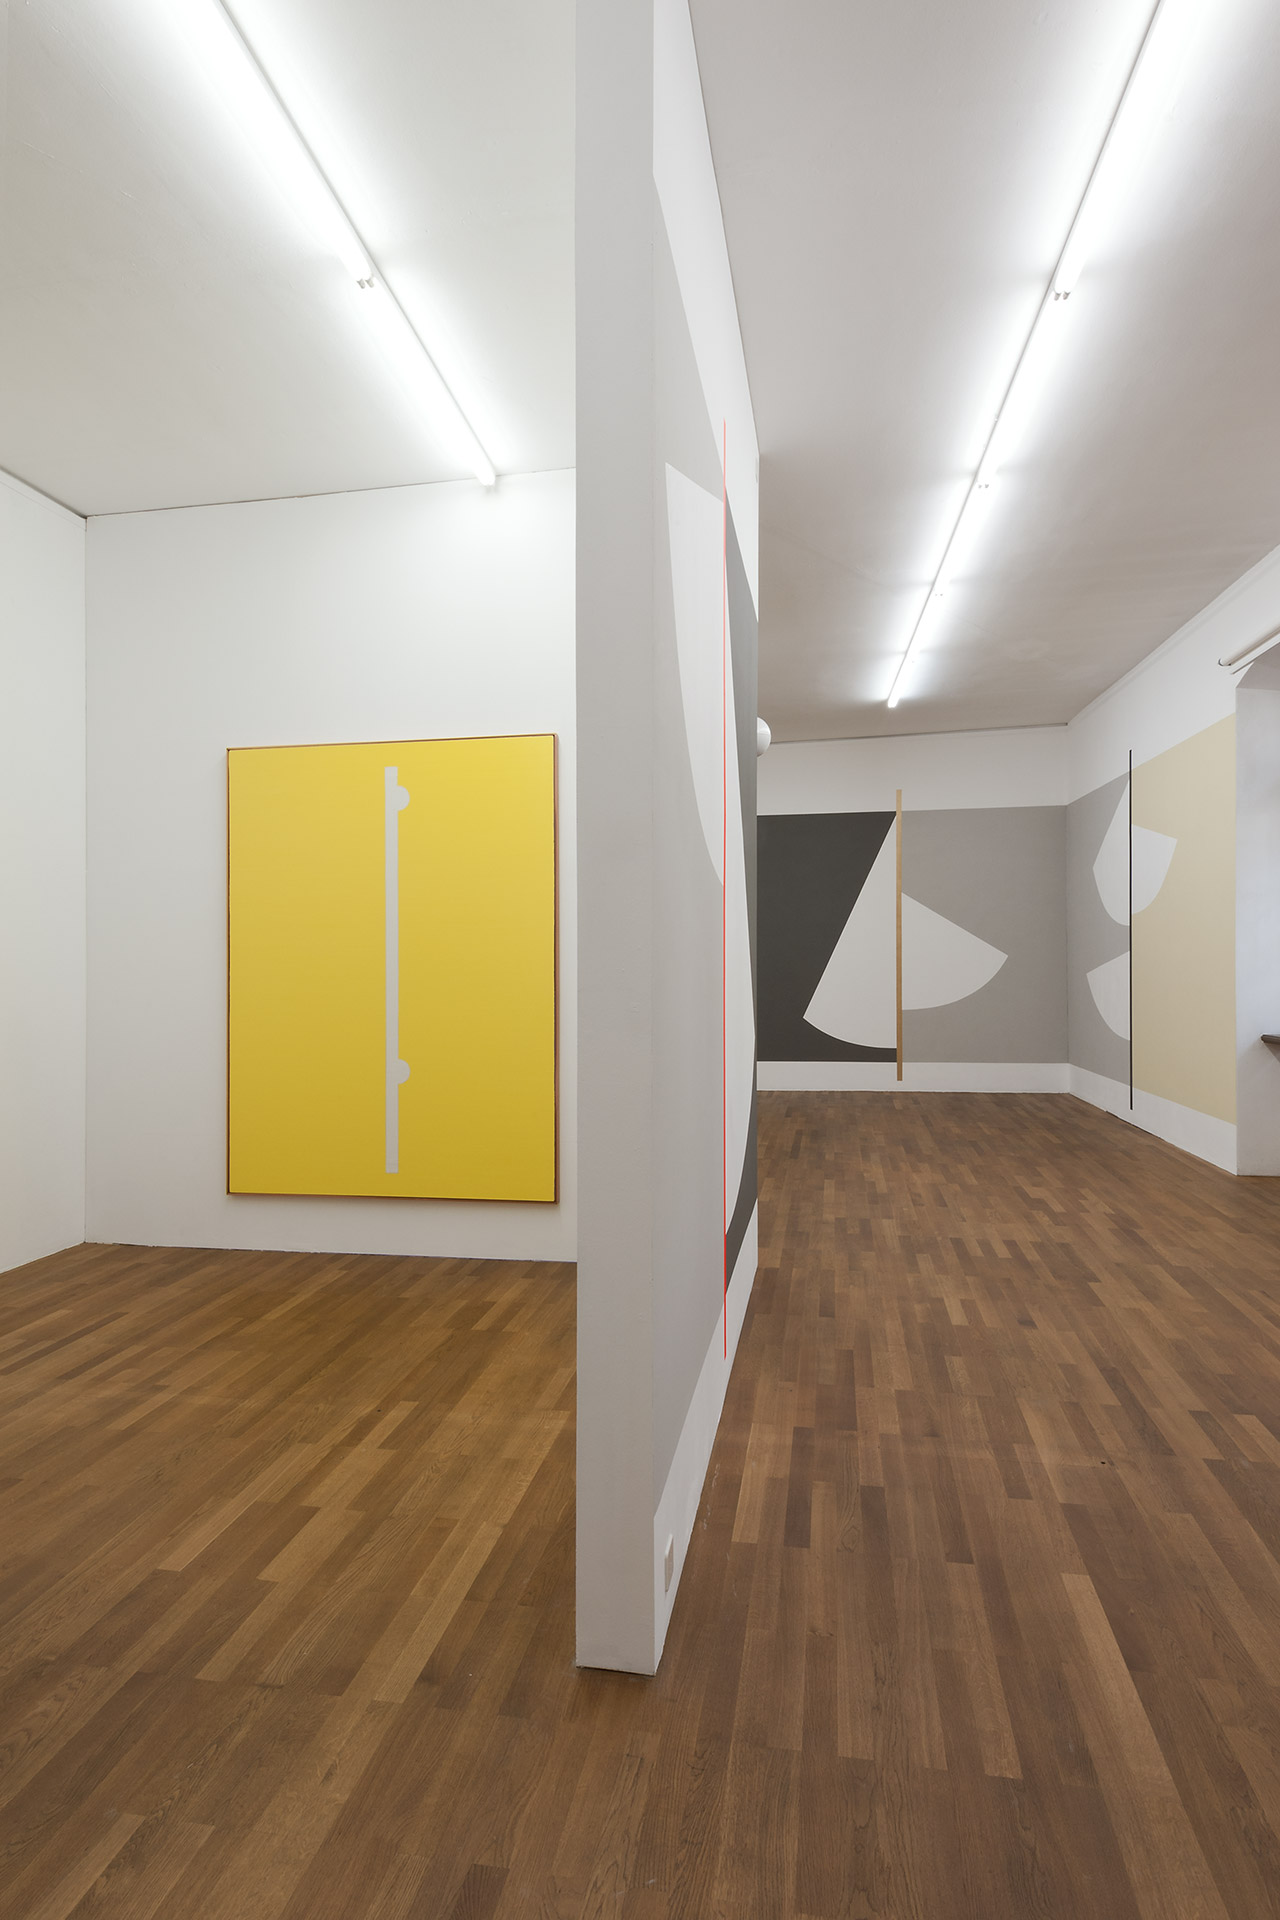 Shaan-Syed-Kunsthalle-Winterthur-2015-4 (Kopie)